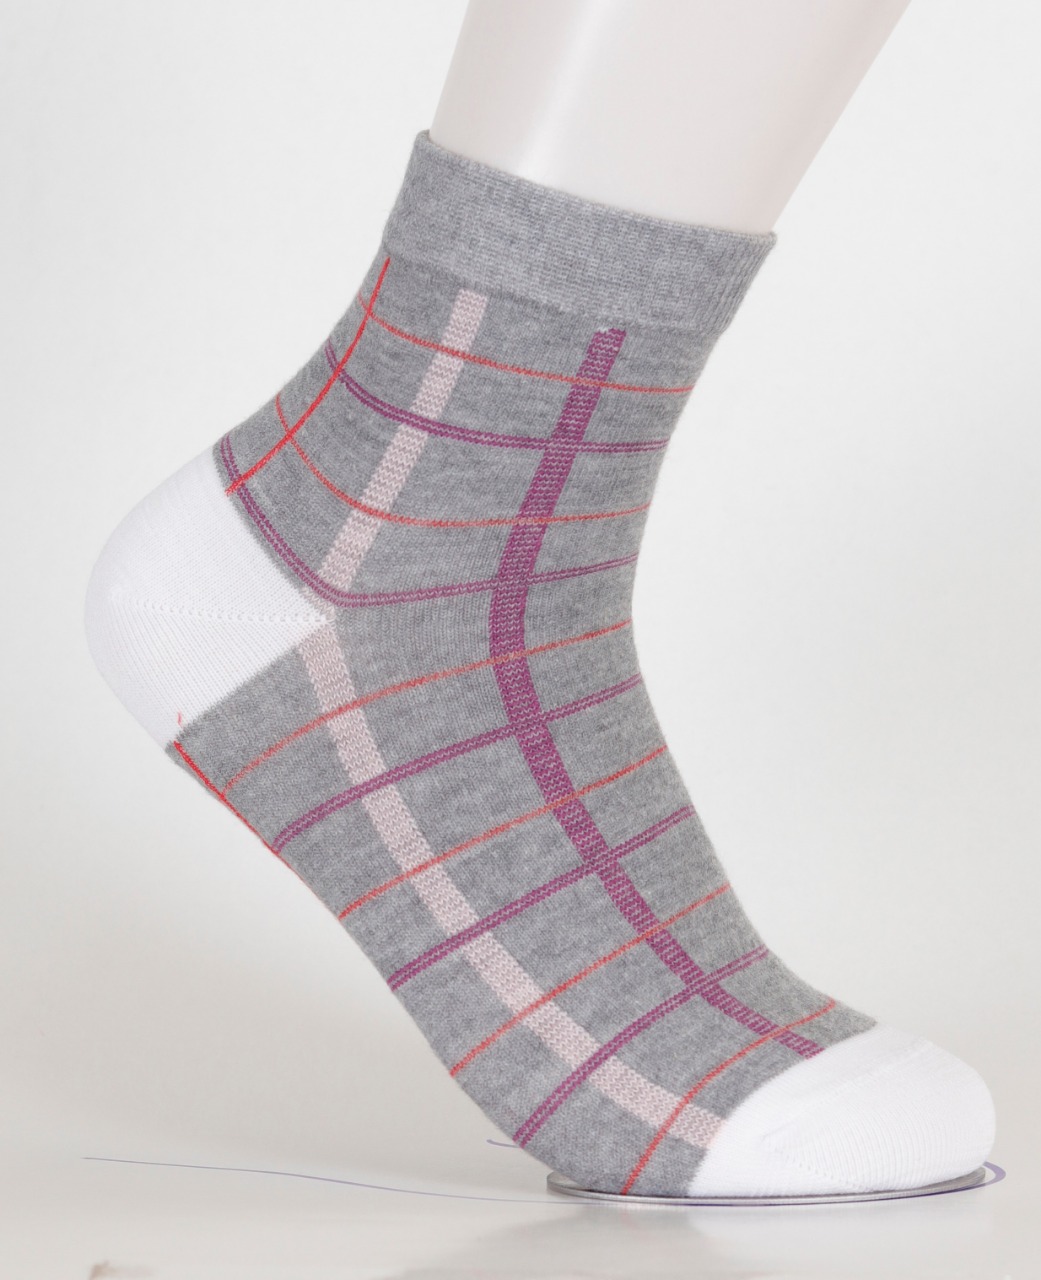  Viva Half Socks for women's 